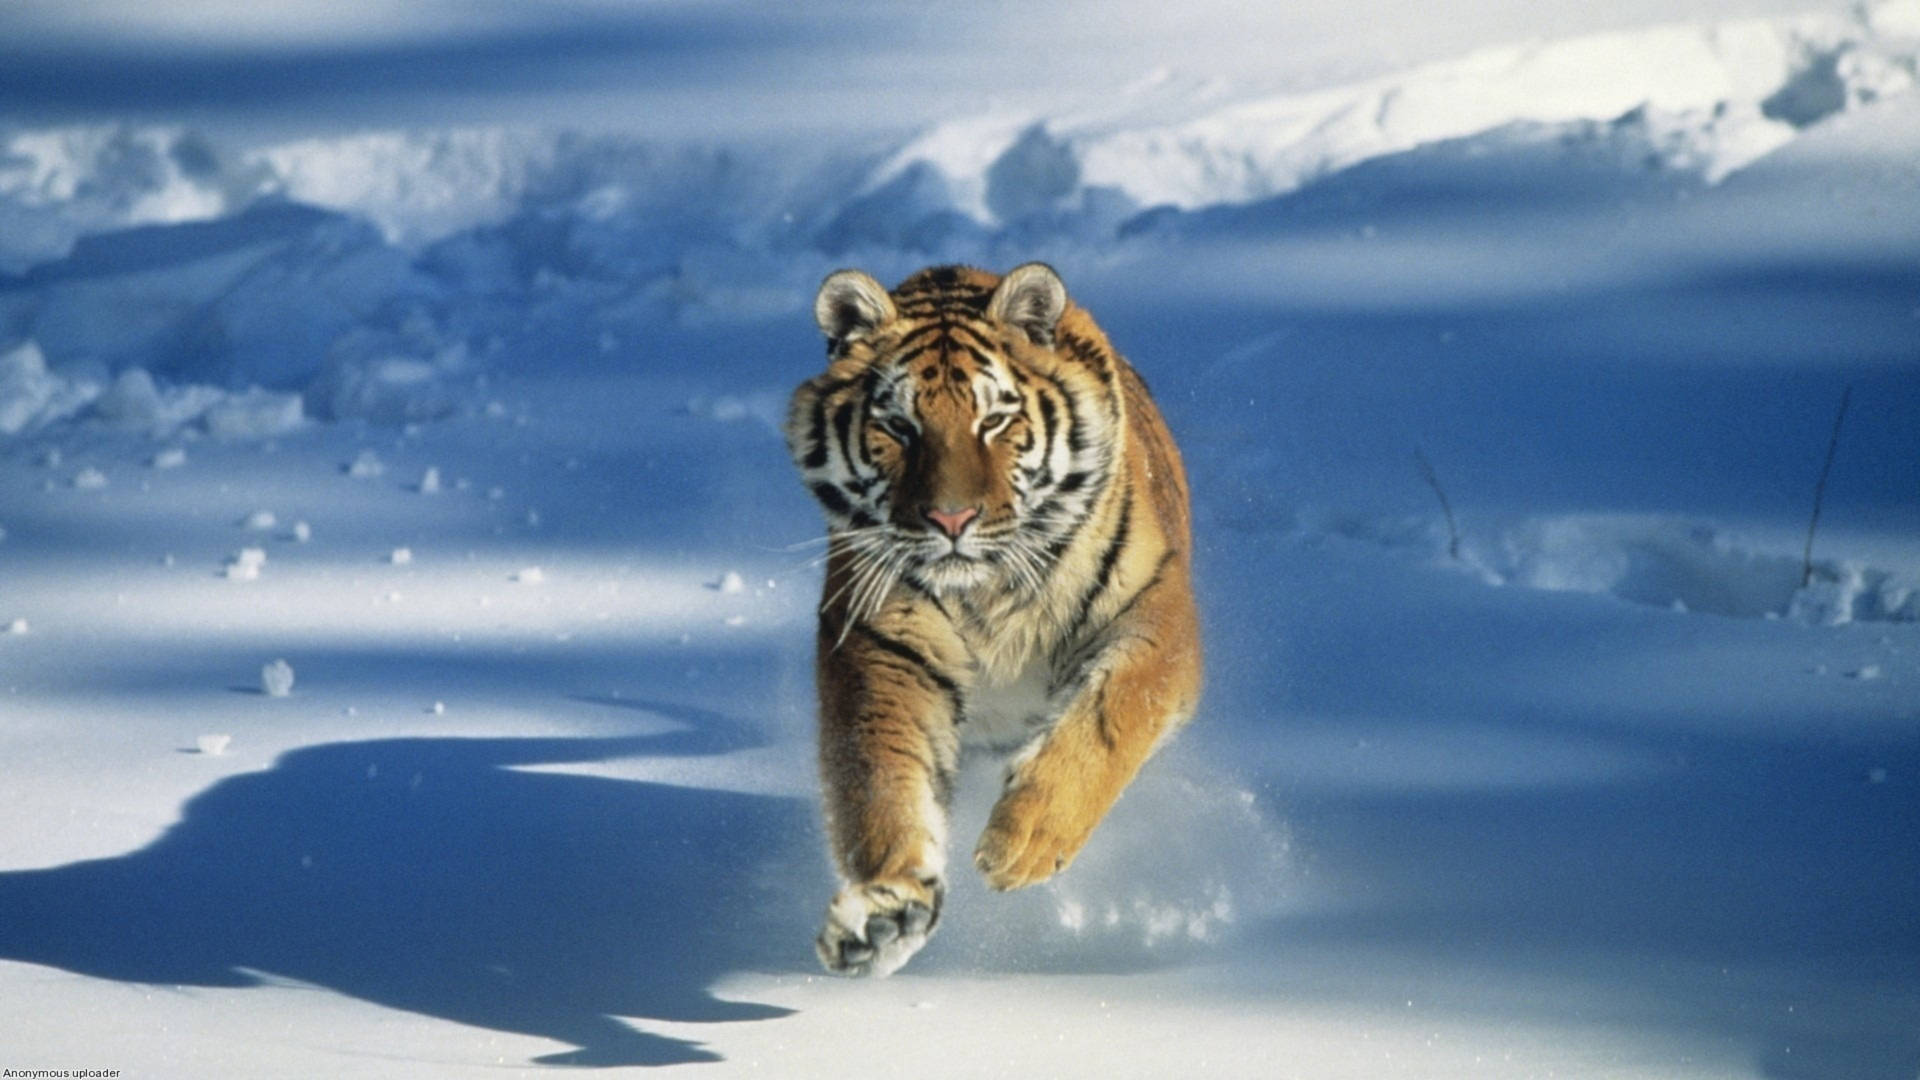 Tiger Running In Snow Wallpaper